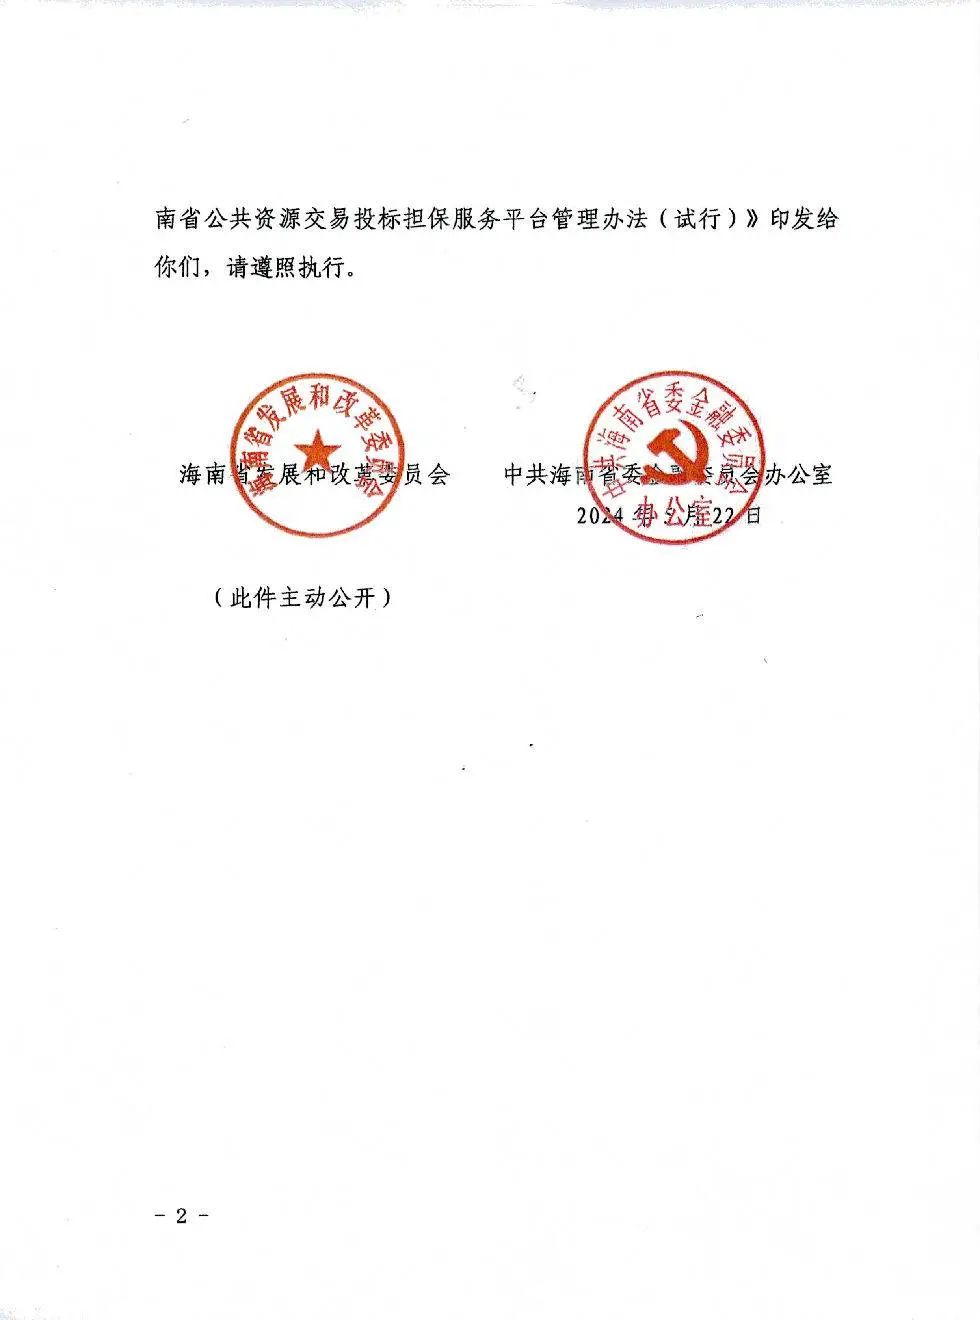 海南省公共资源交易投标担保服务平台管理办法(试行）2.jpg